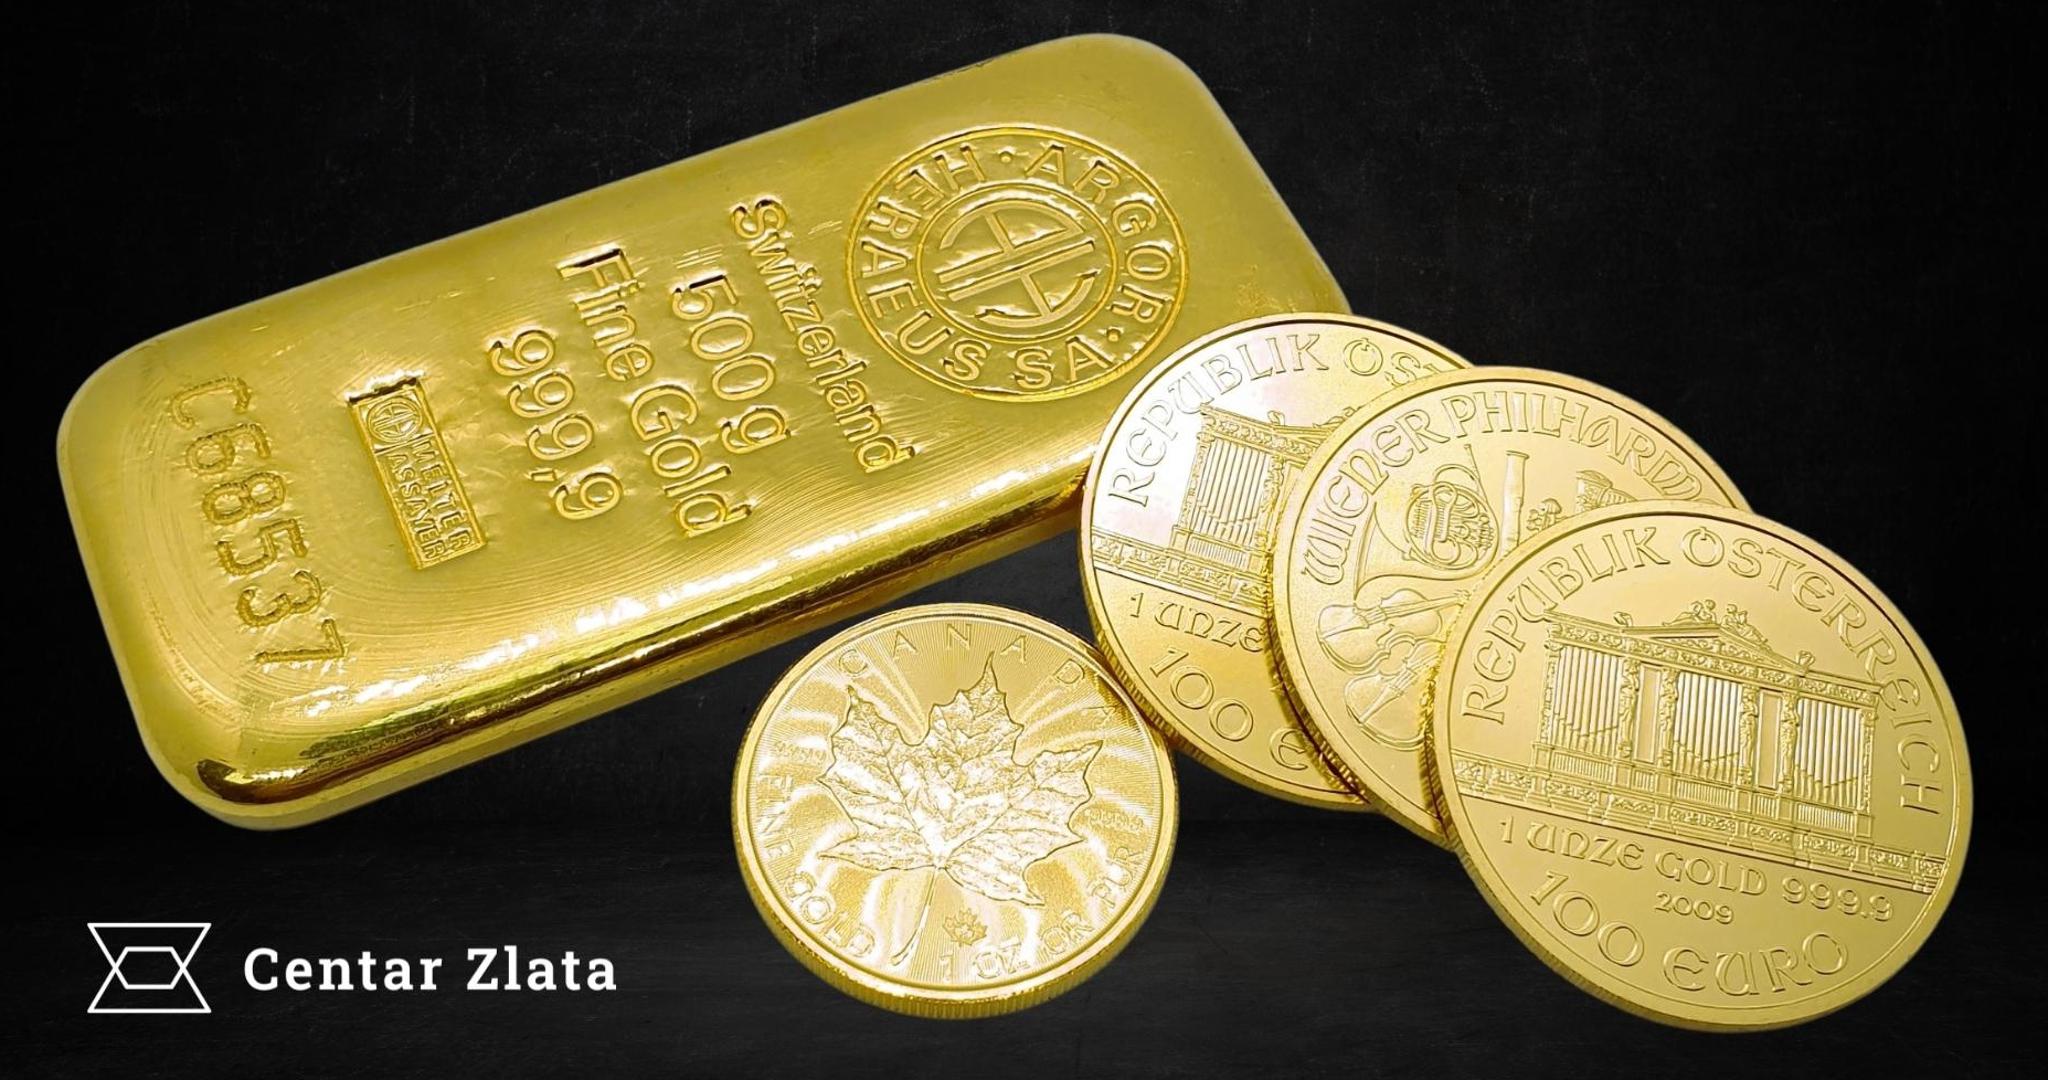 Investicijsko zlato u obliku poluga i zlatnika